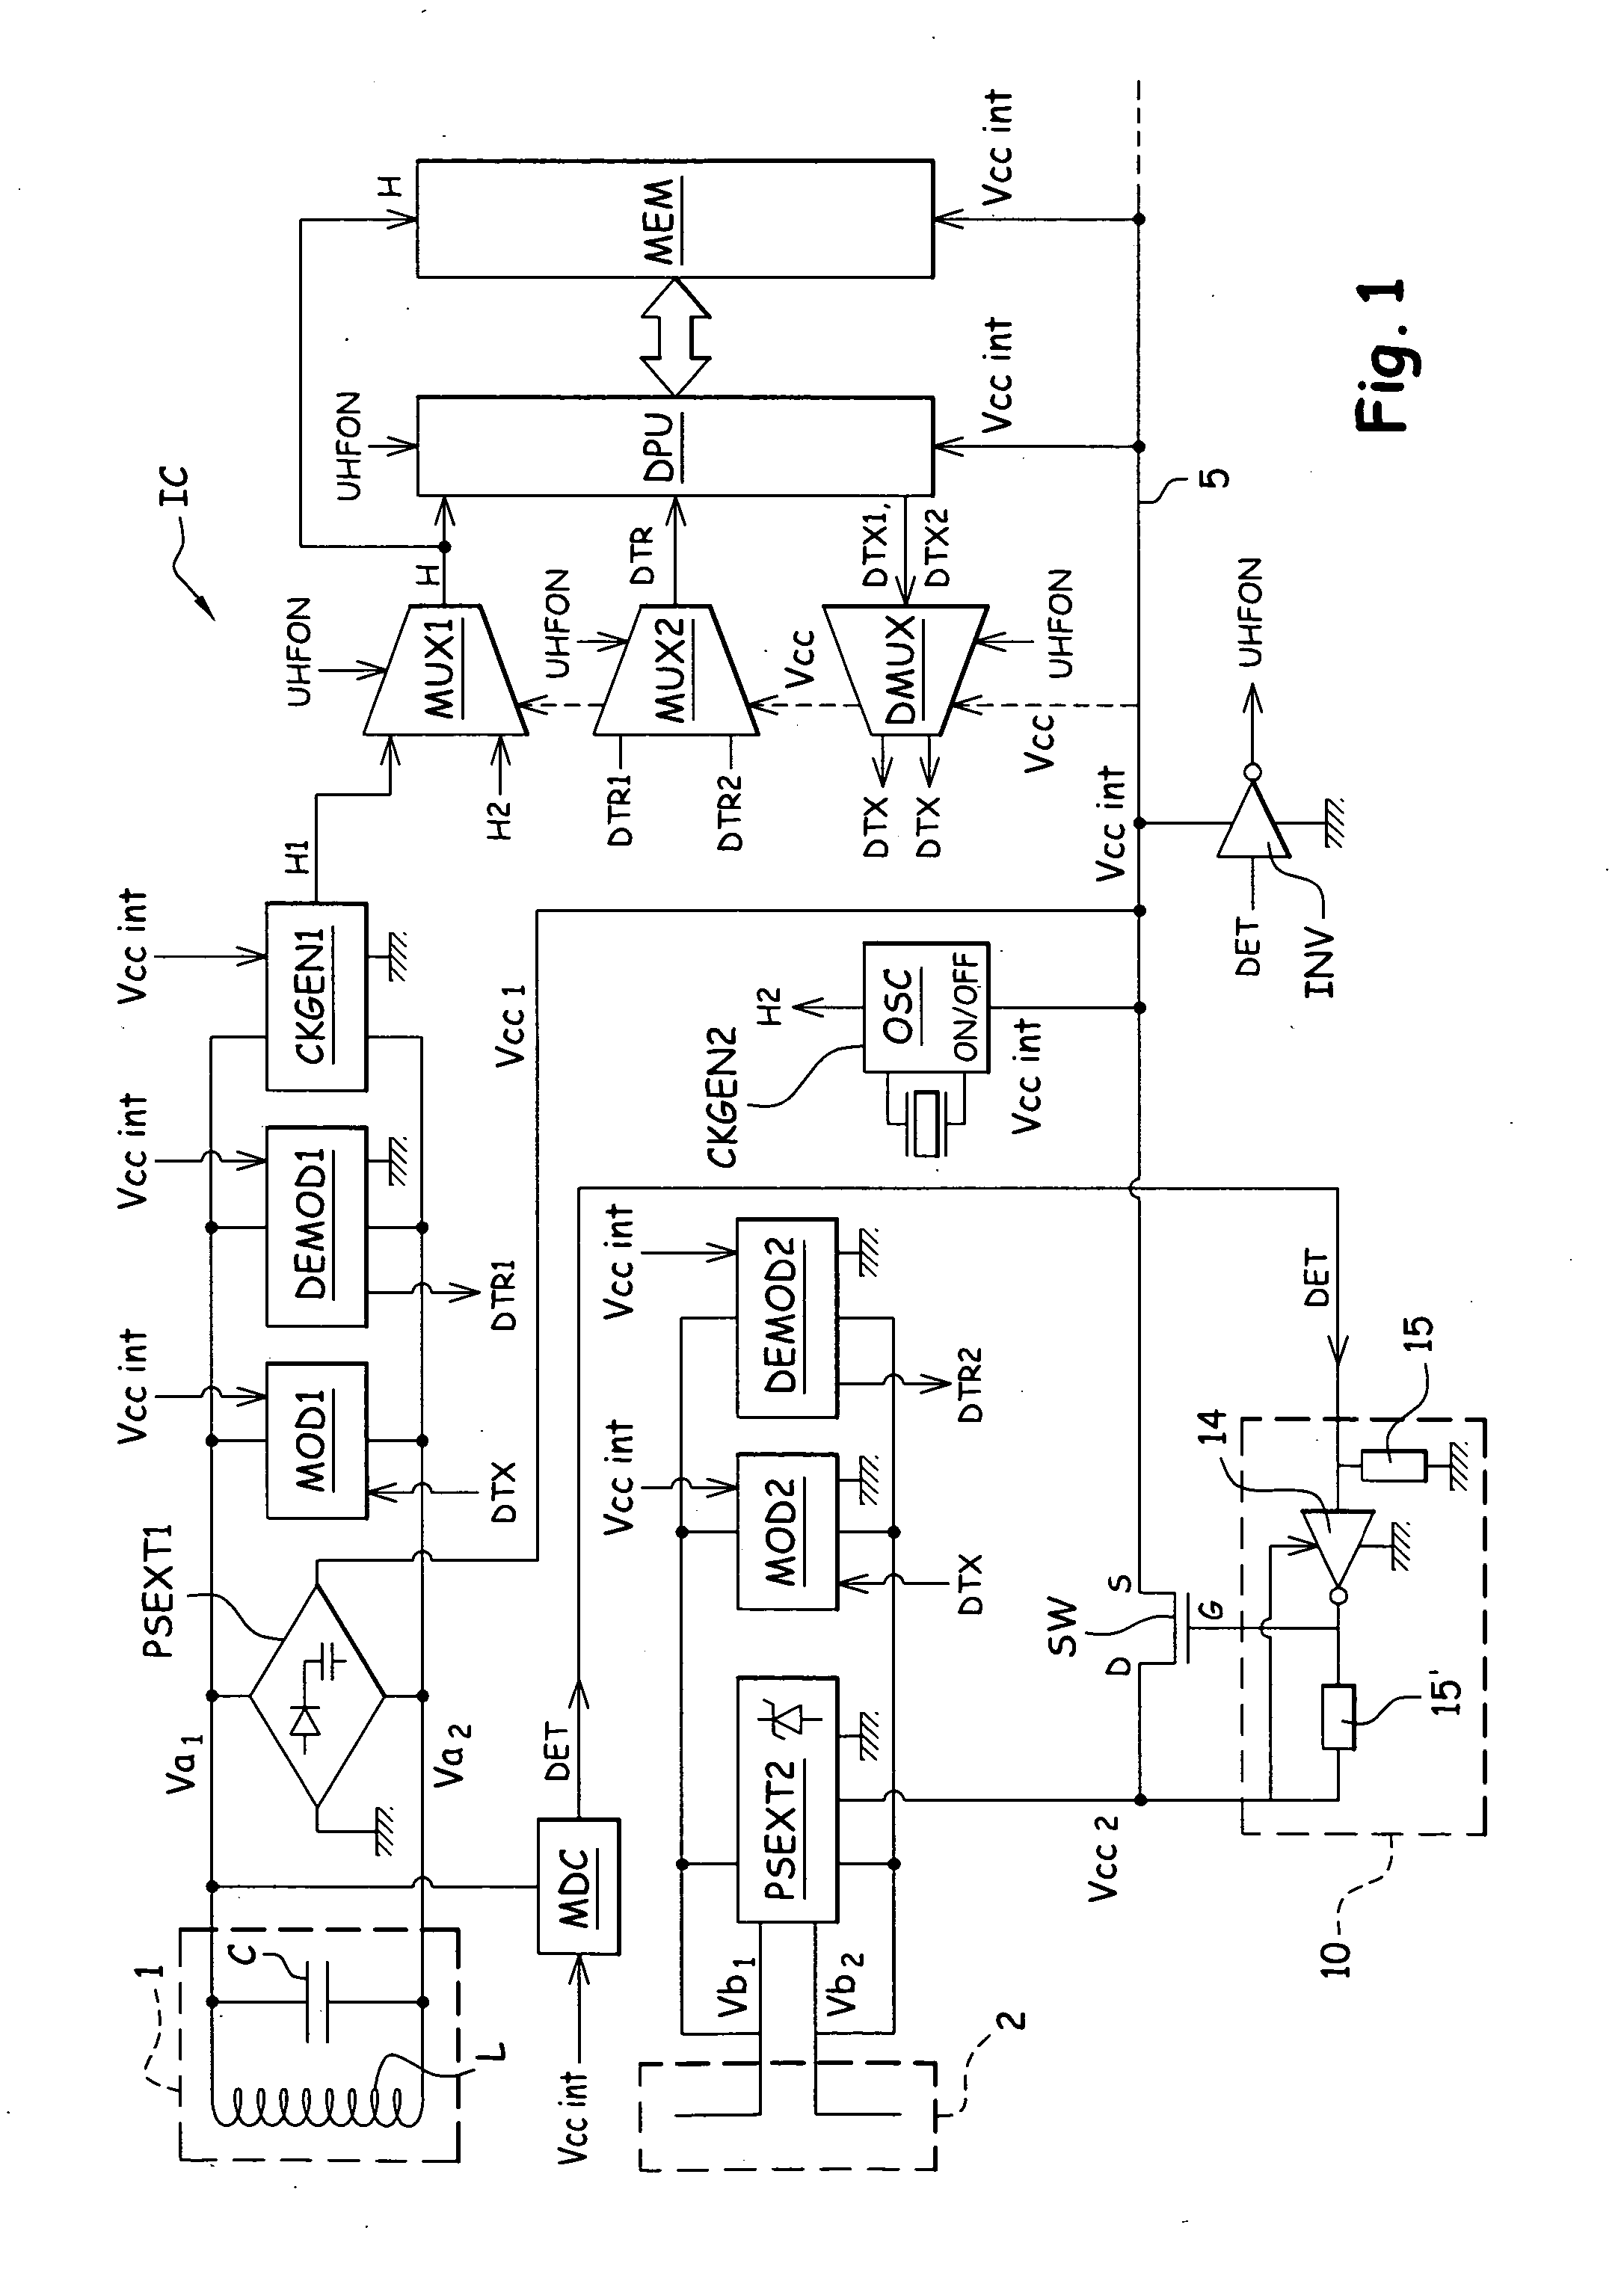 RFID-UHF integrated circuit